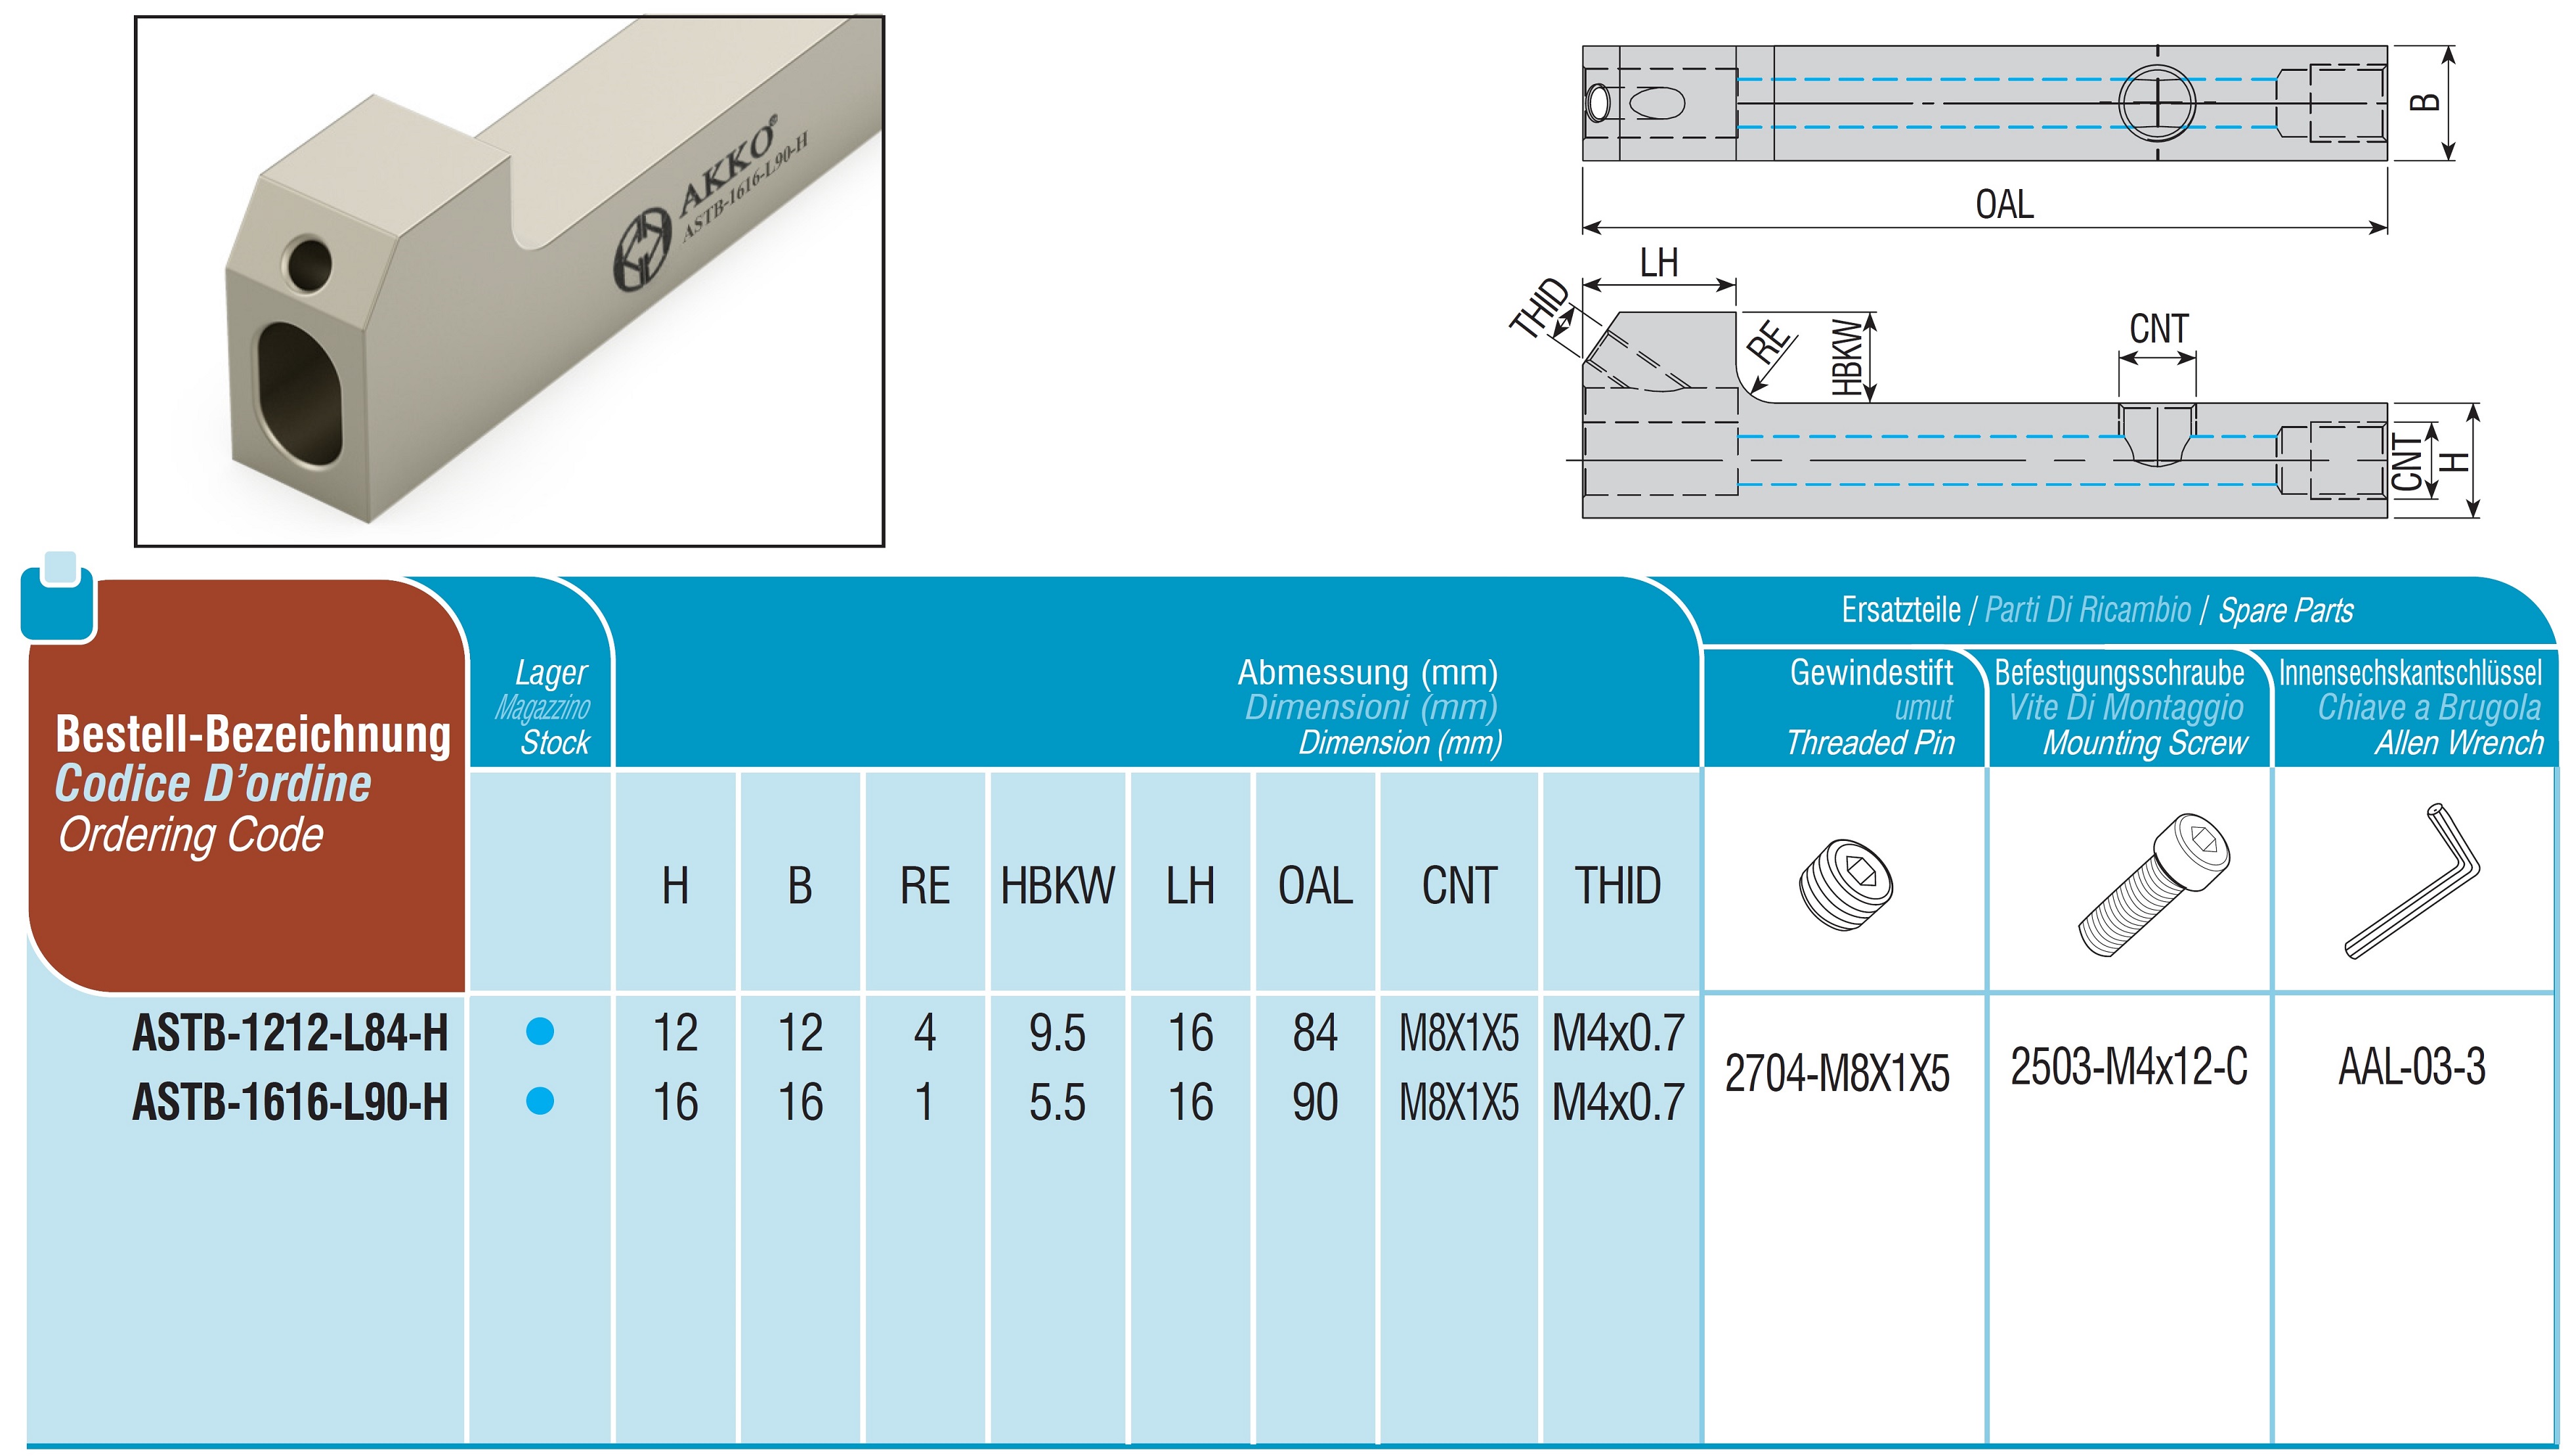 AKKO-Grundhalter für modulares Langdrehautomaten-Werkzeug SEC-tools
Schaftgröße 12 x 12 mm, mit Innenkühlung